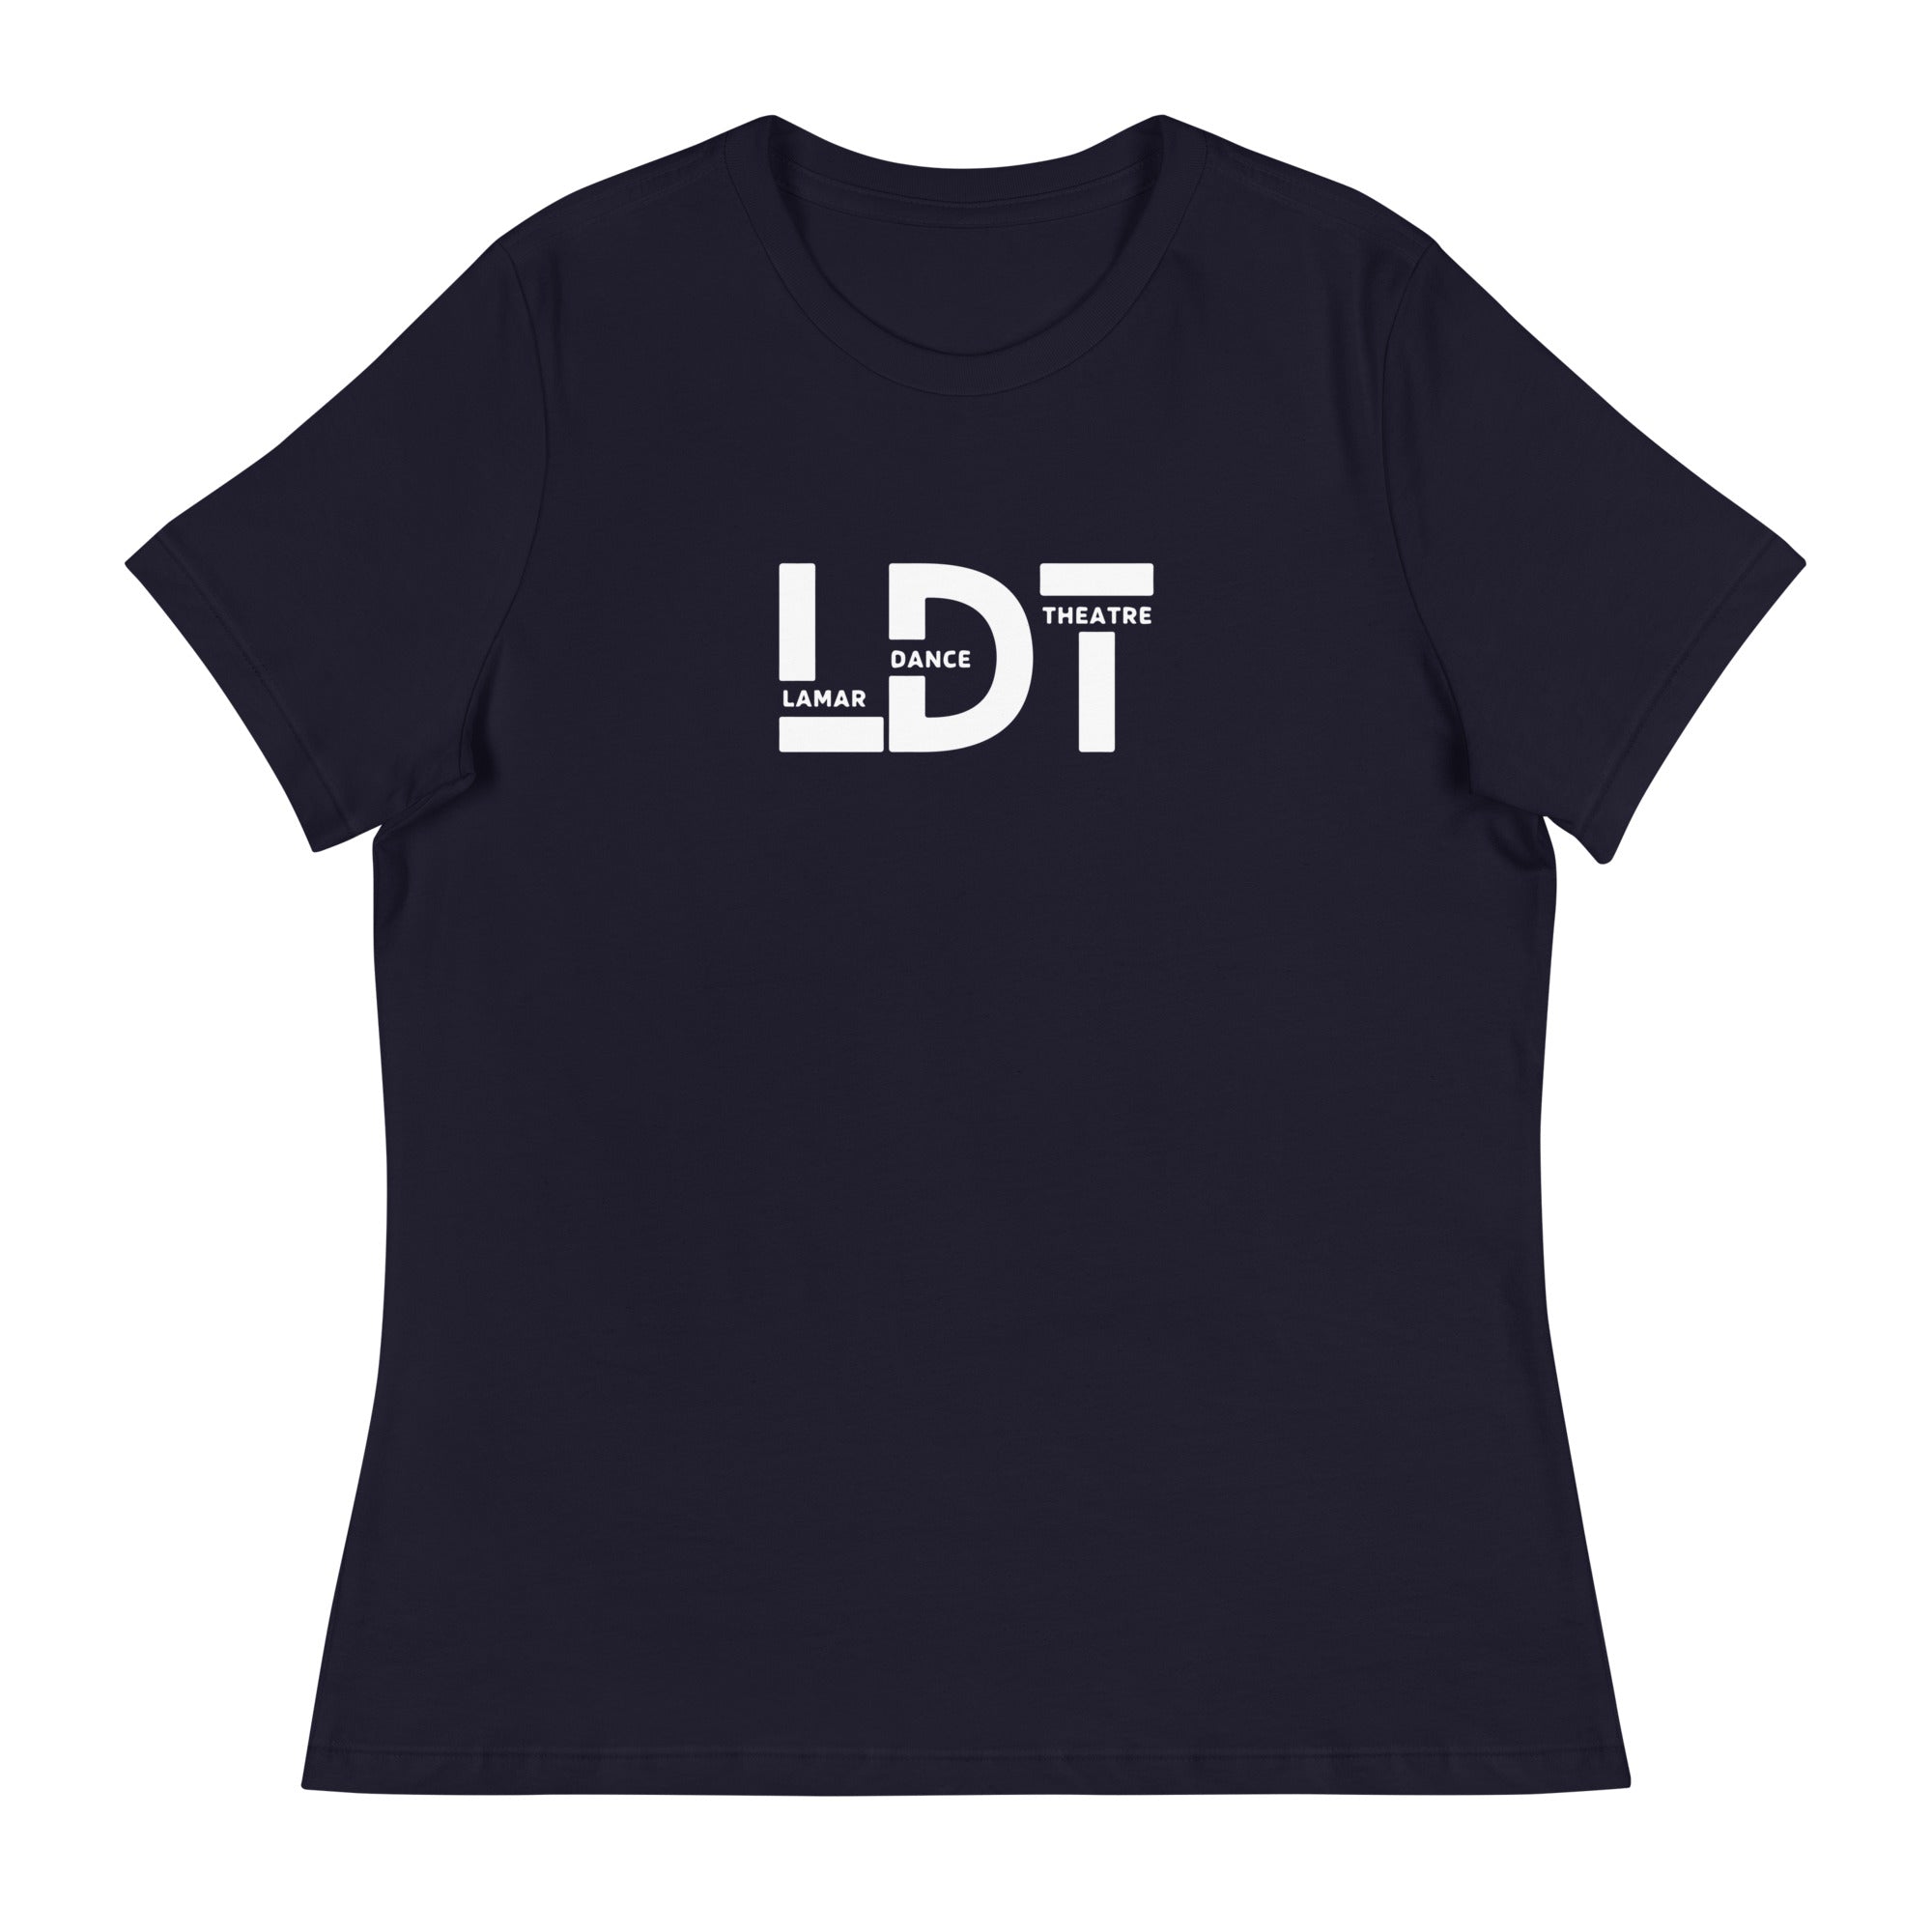 LHSDTC Women's Relaxed T-Shirt